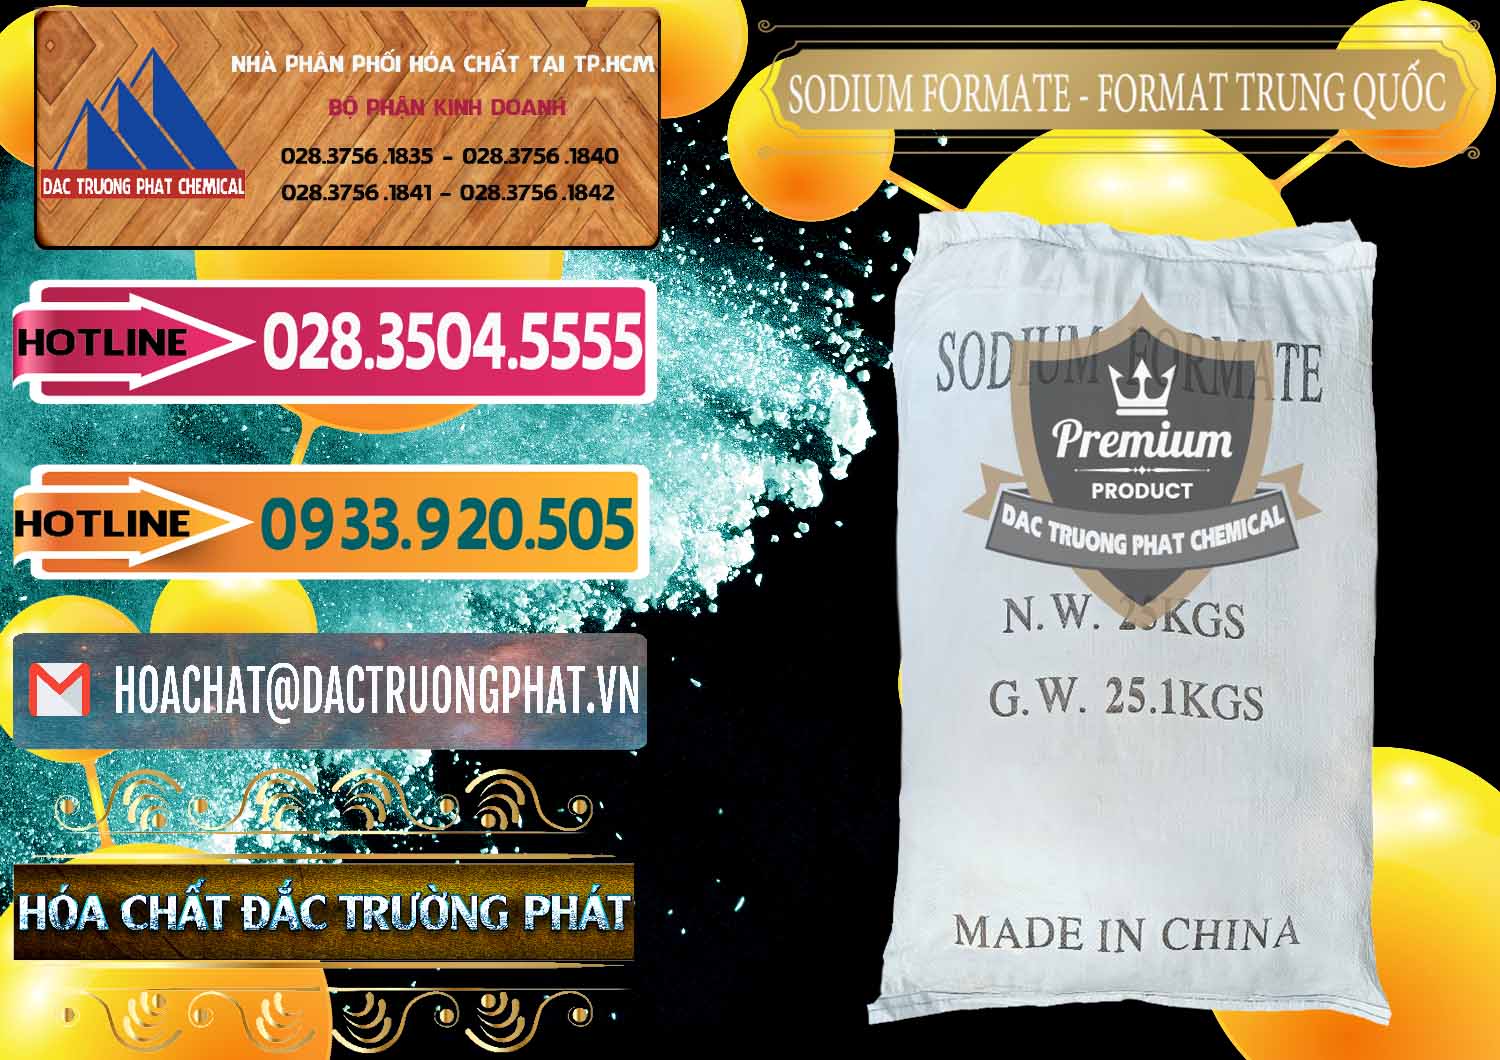 Chuyên cung ứng ( bán ) Sodium Formate - Natri Format Trung Quốc China - 0142 - Cty kinh doanh và phân phối hóa chất tại TP.HCM - dactruongphat.vn